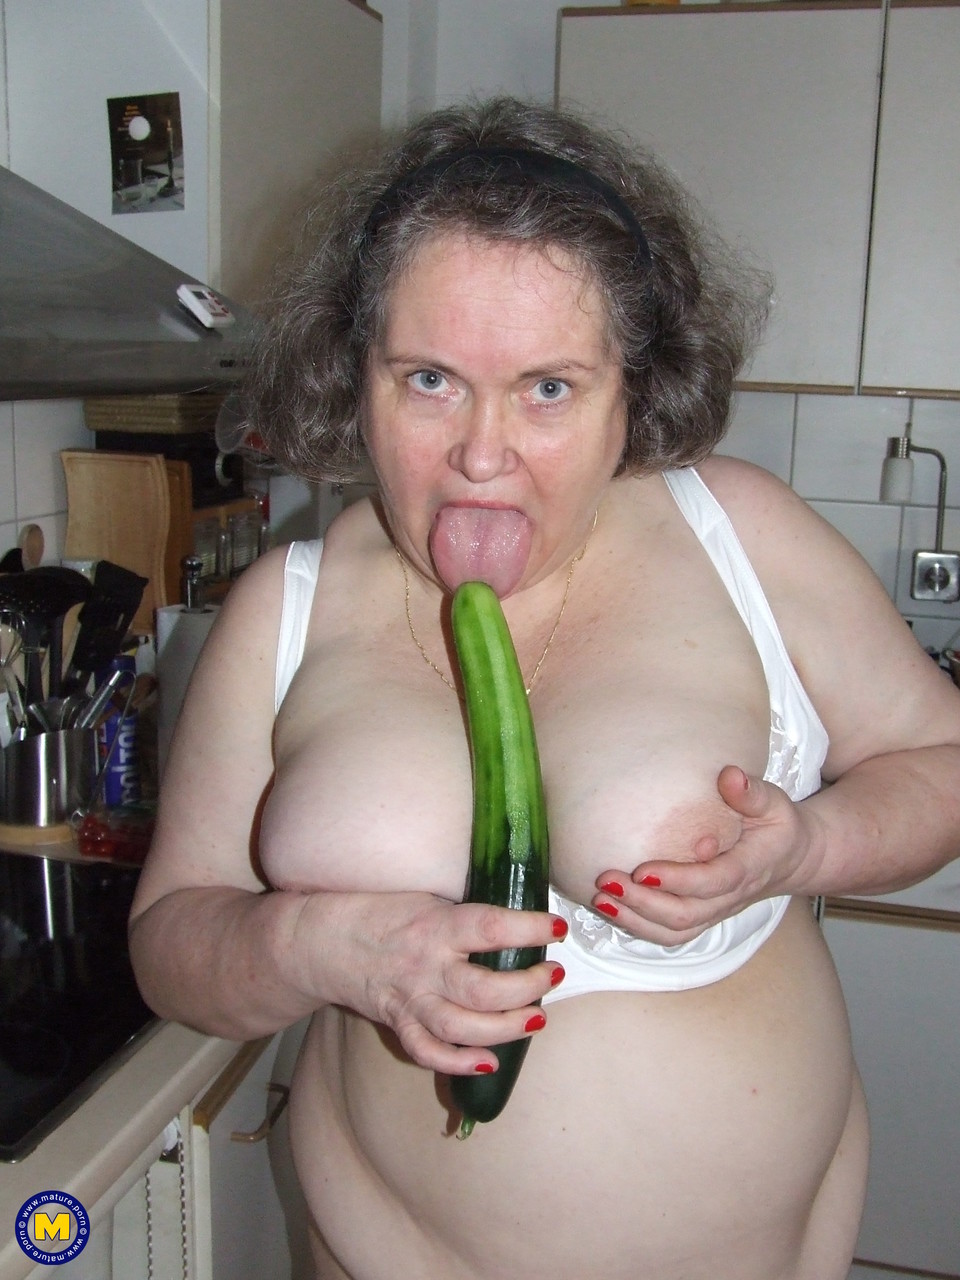 Fat mature housewife Birgid masturbates with a cucumber in the kitchen photo porno #423883226 | Mature NL Pics, Birgid, Granny, porno mobile